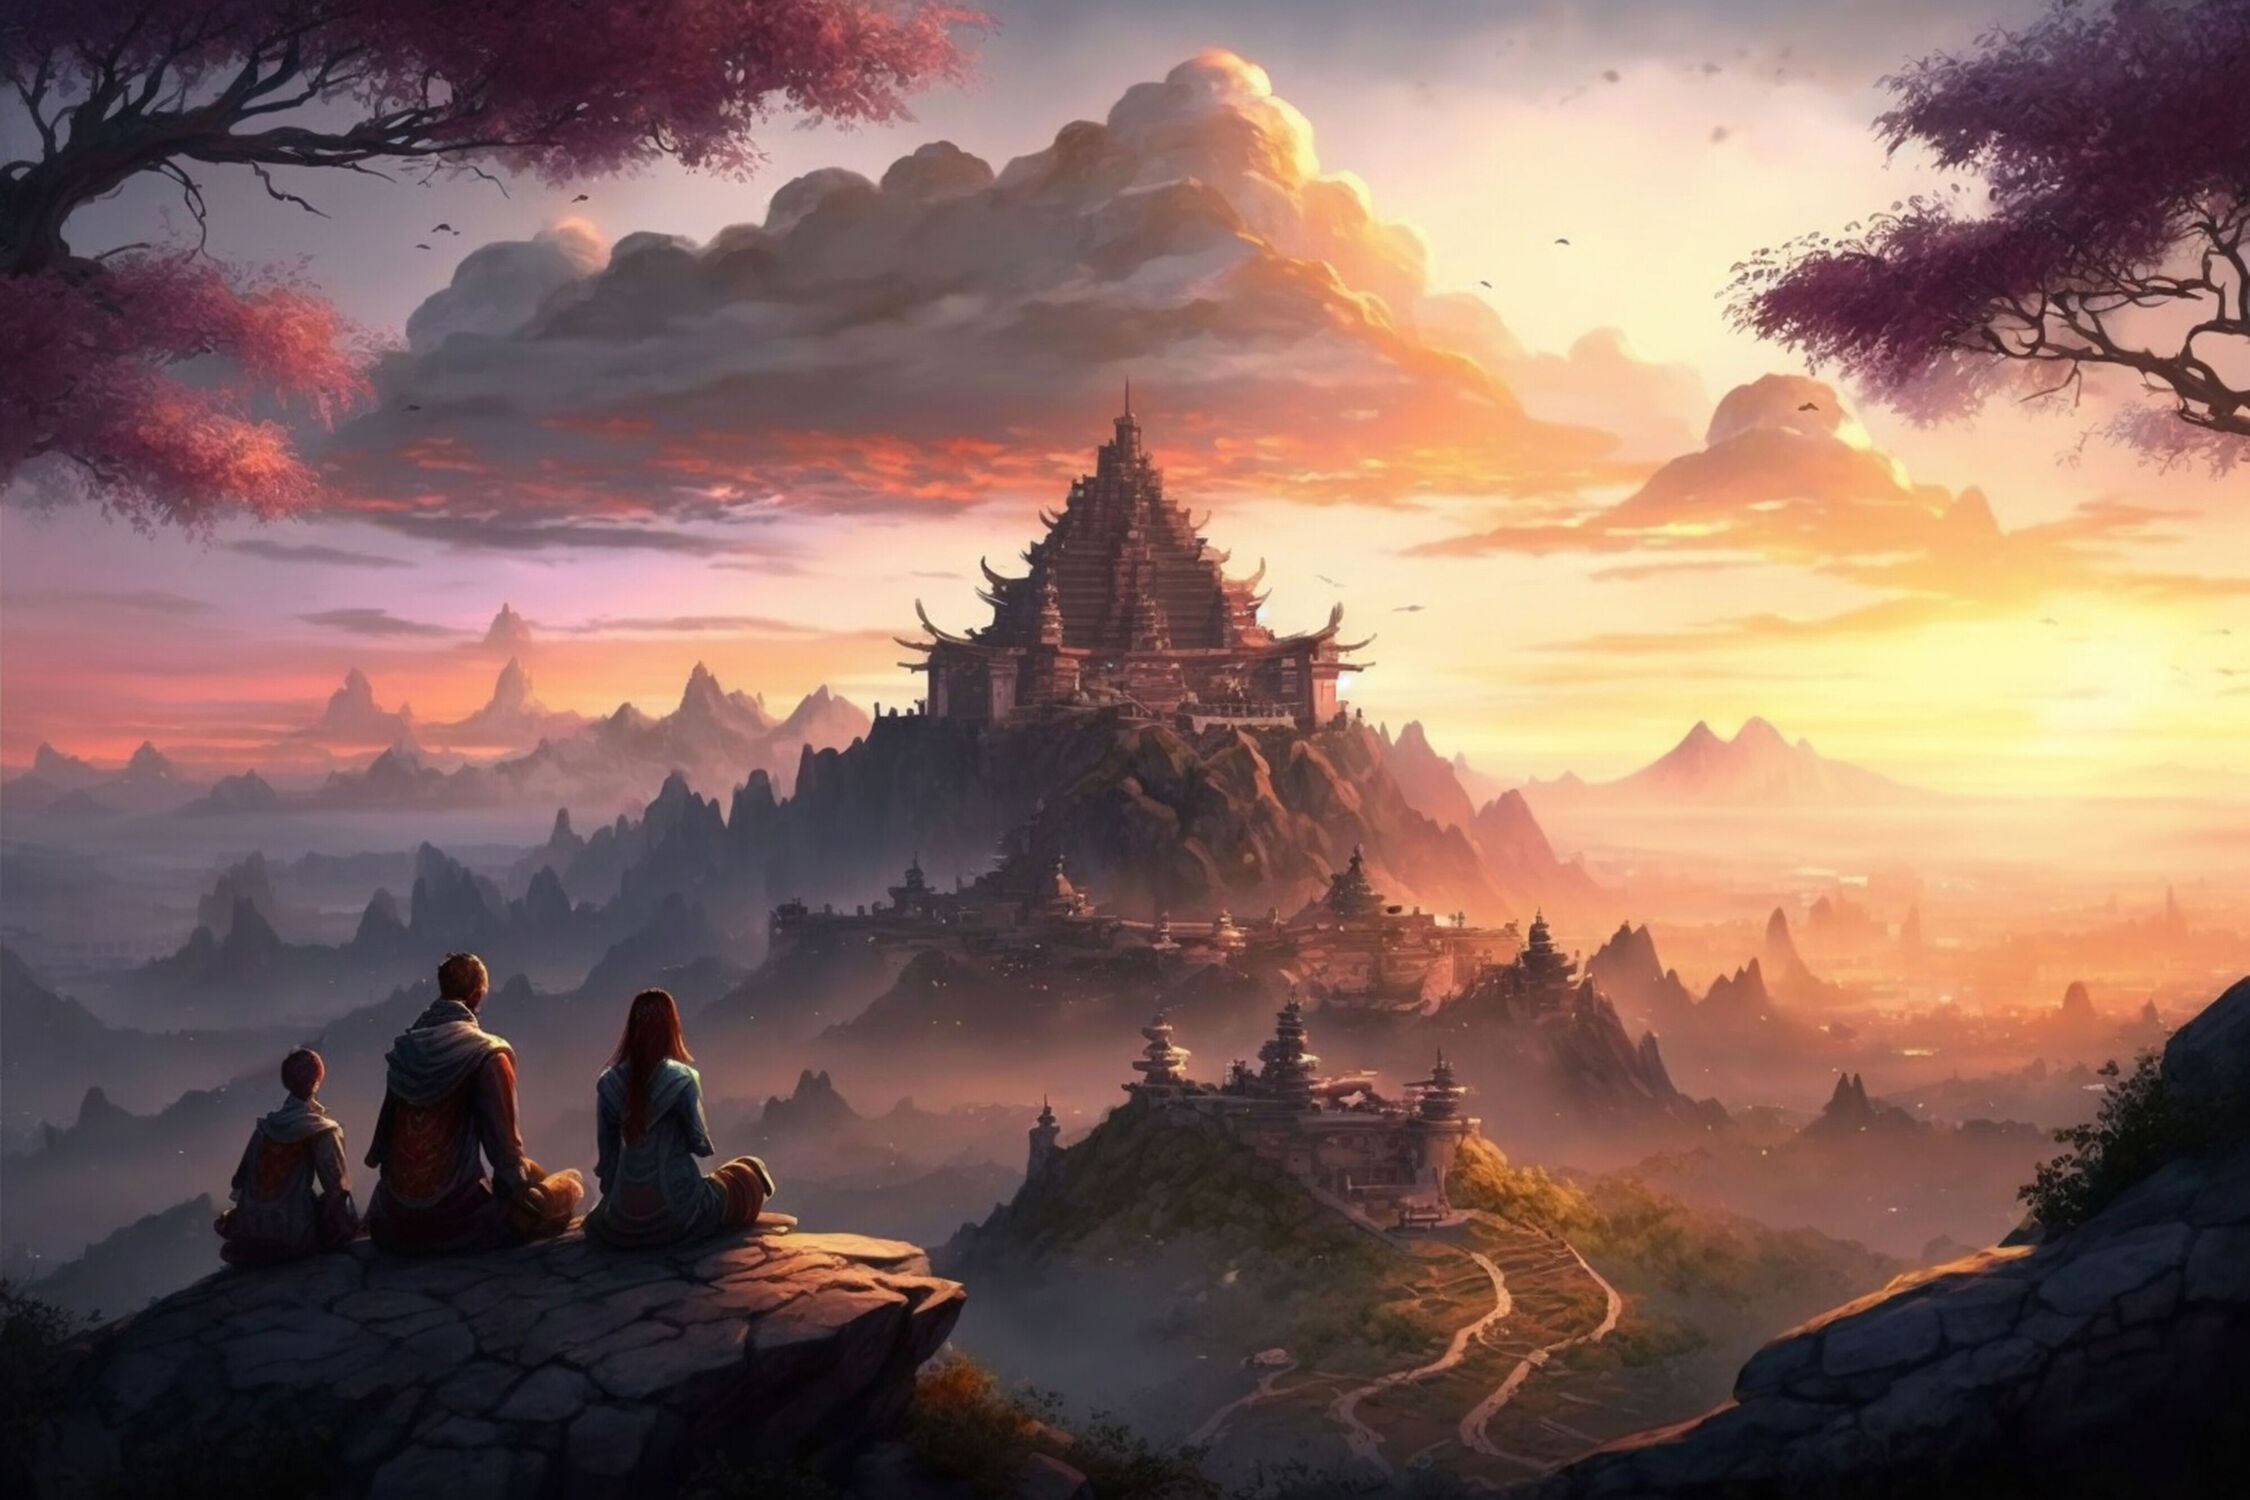 Bild mit Sonnenuntergang, Landschaft, Ruhe, Tempel, spiritualität, Gelassenheit, orange Wolken, hoher Berg, Felsvorsprung, Chinesische Priester